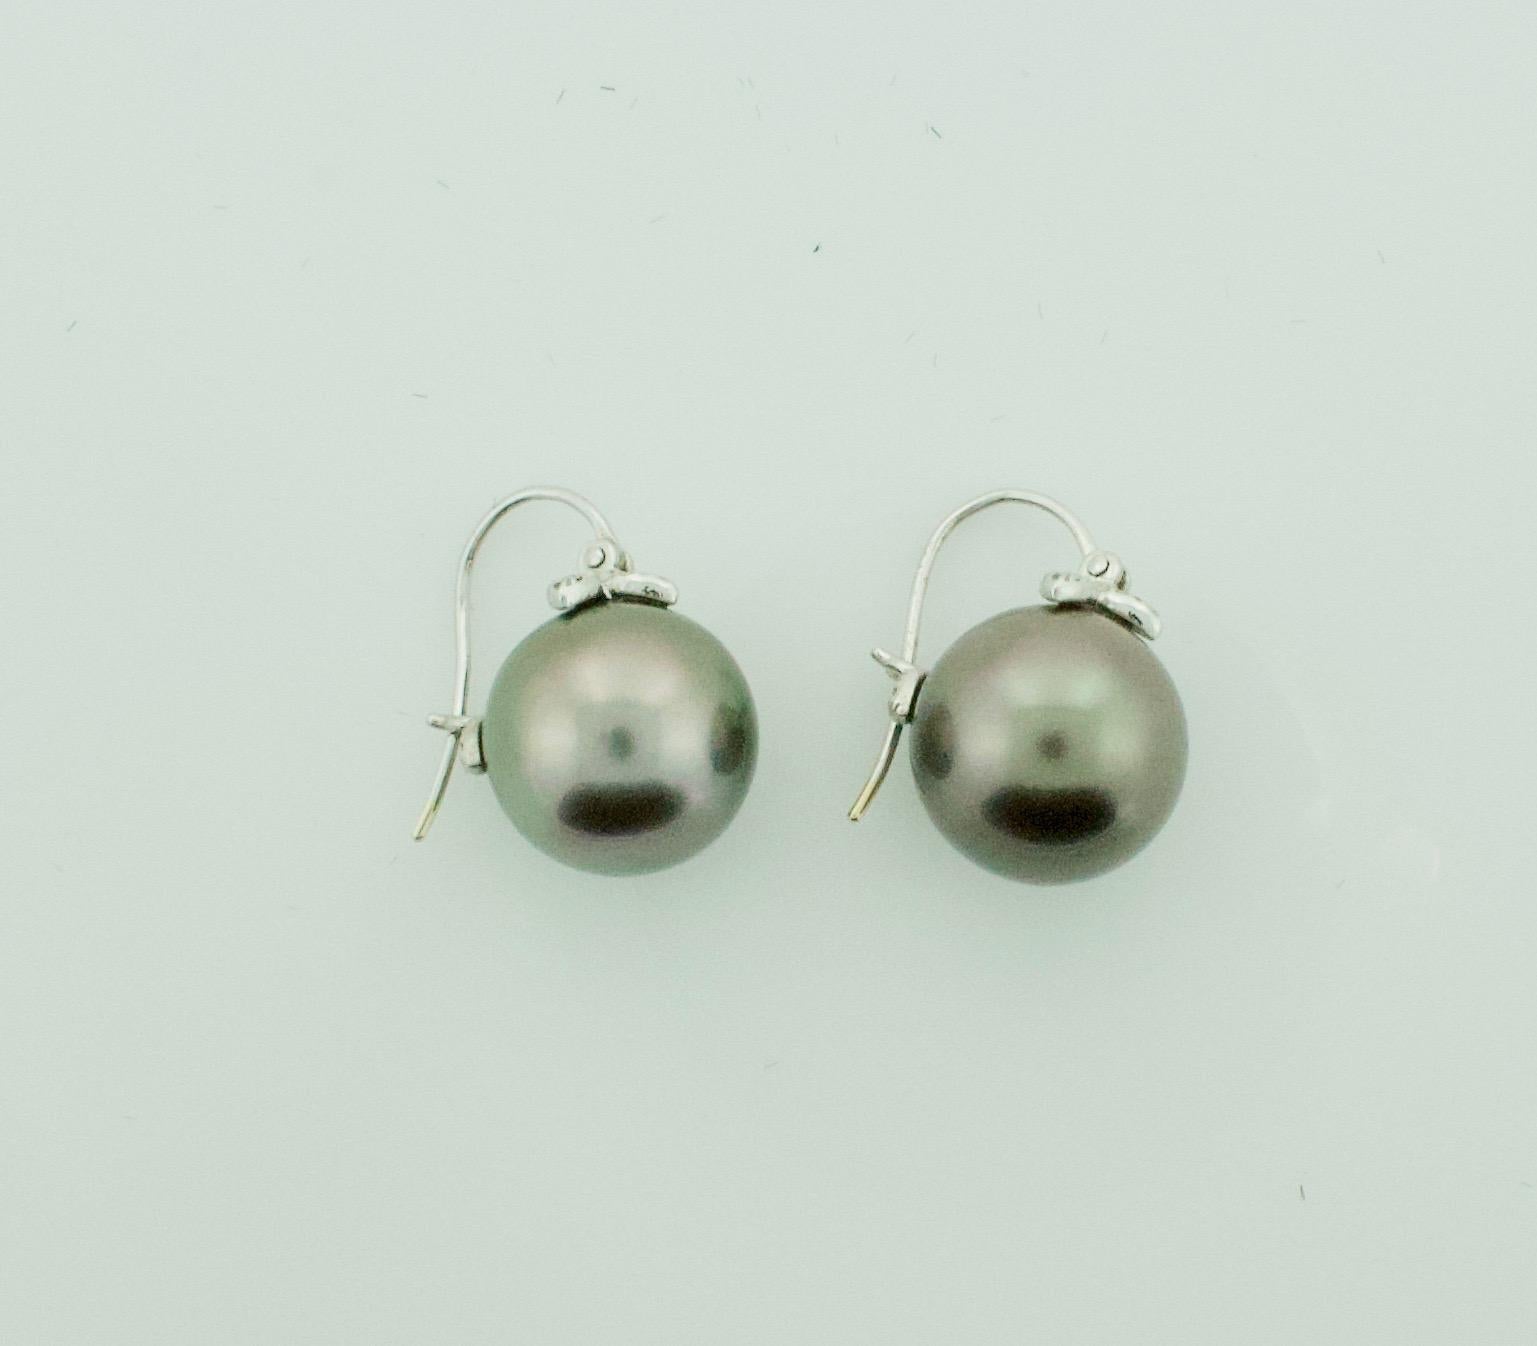 costco pearl earrings